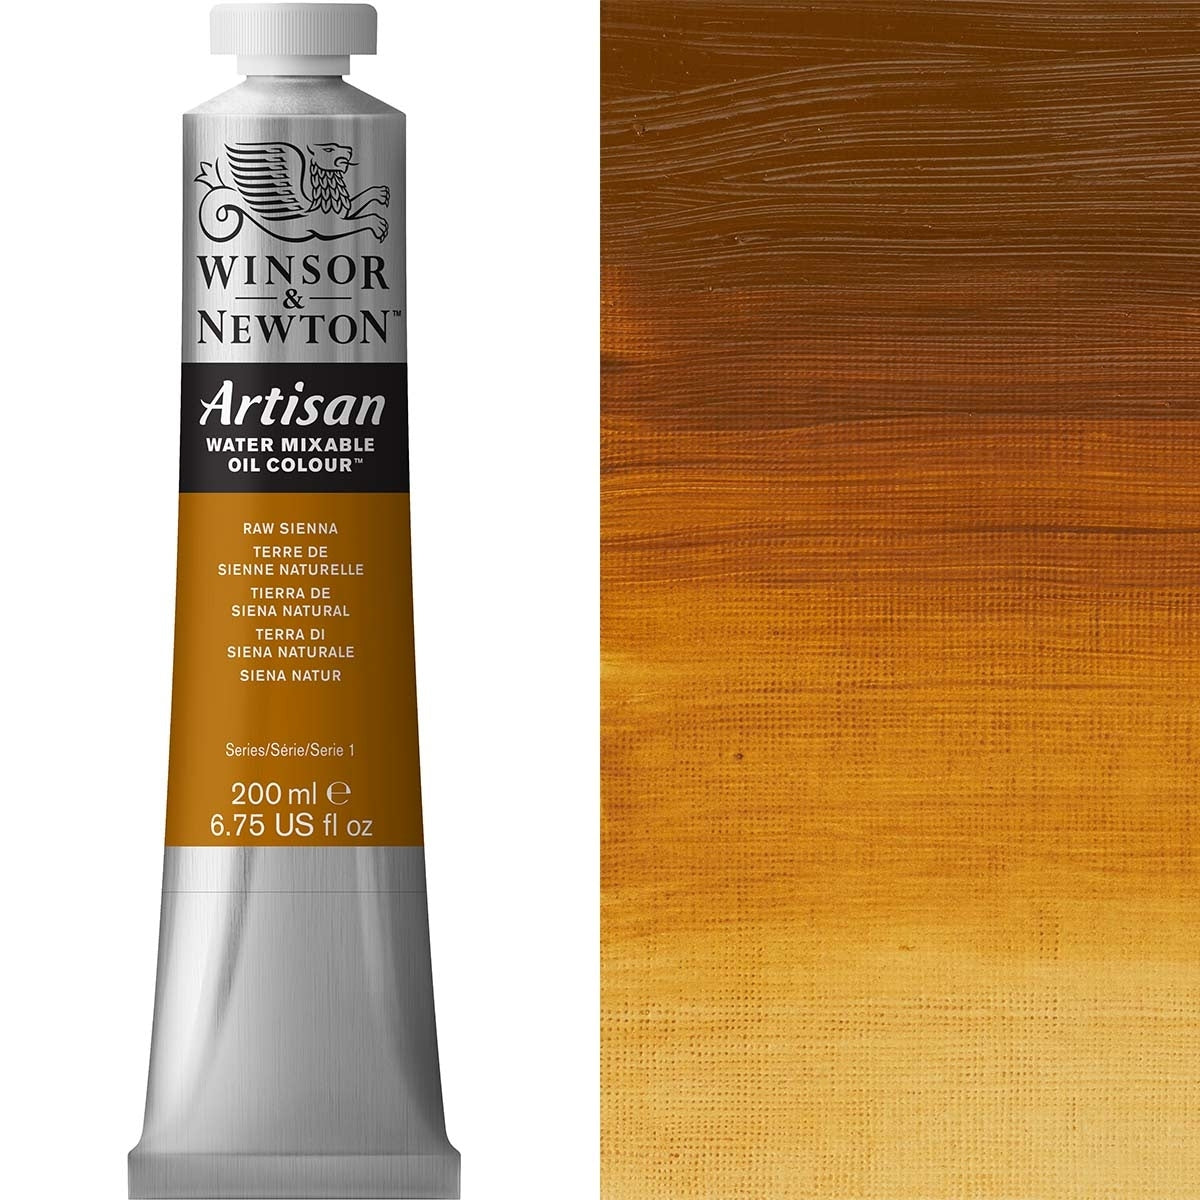 Winsor e Newton - Watermixable di colore olio artigianale - 200 ml - SINA RAW